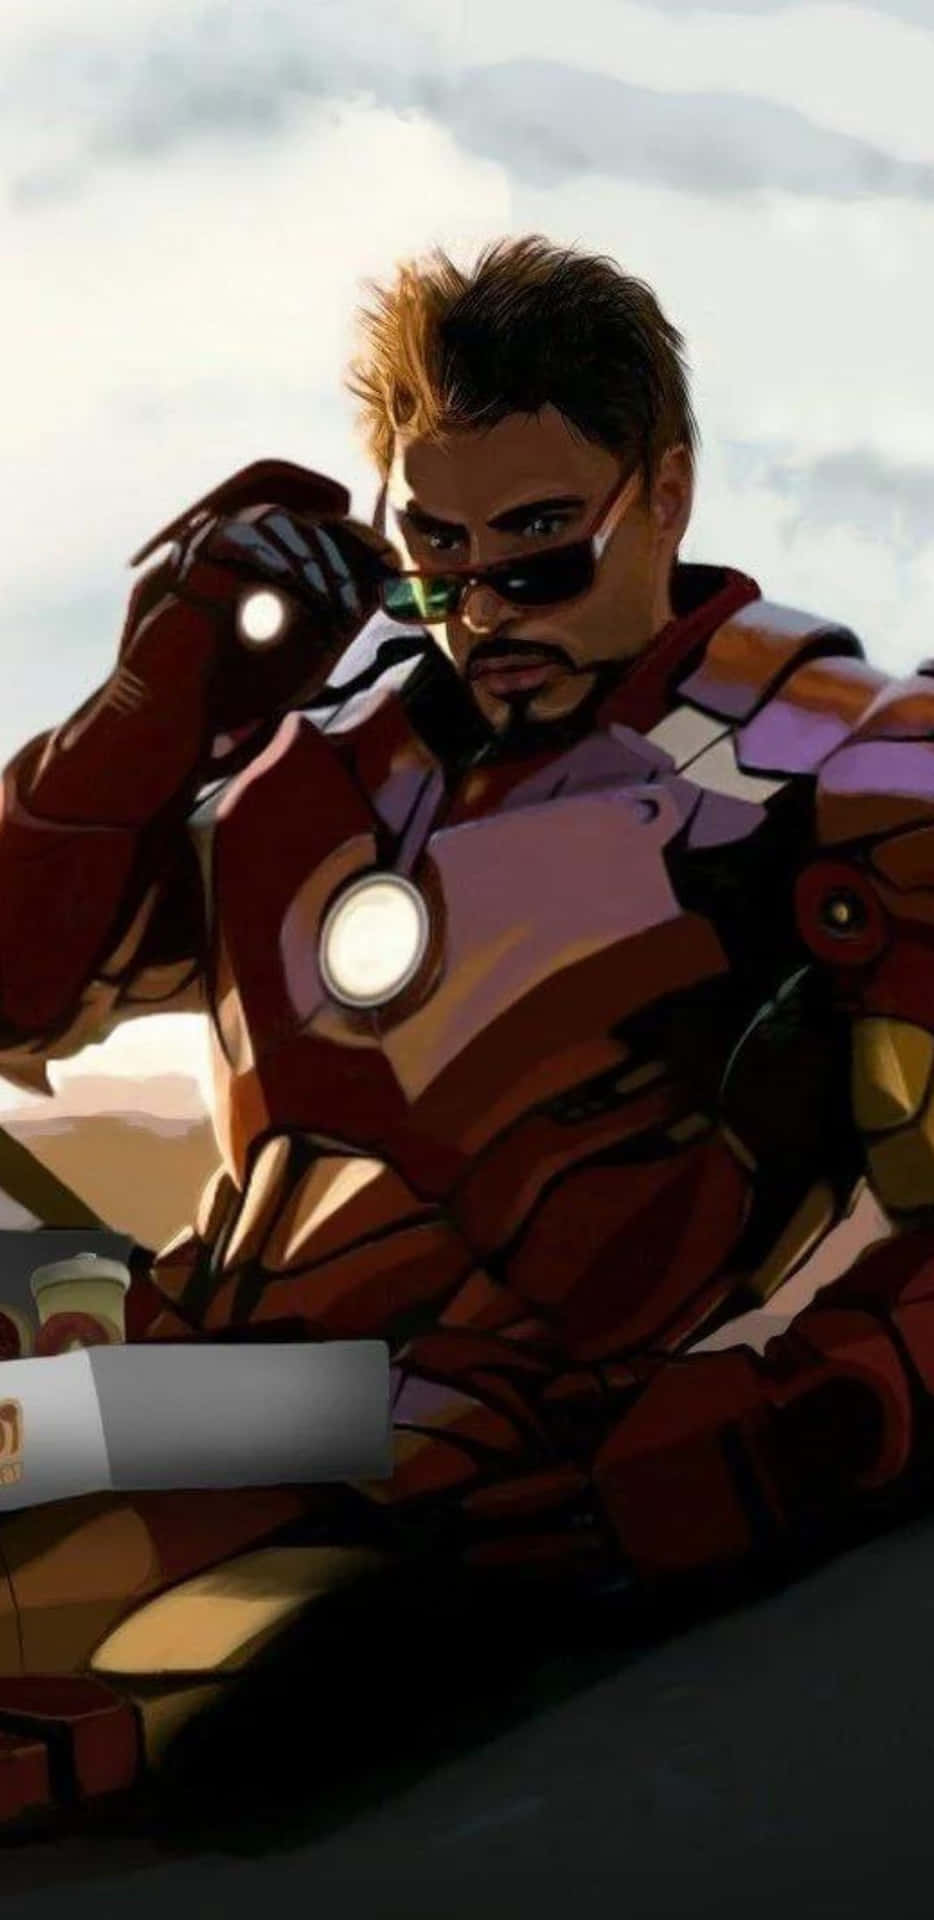 Pixel3xl Iron Man Tony Stark Bakgrundsbild.